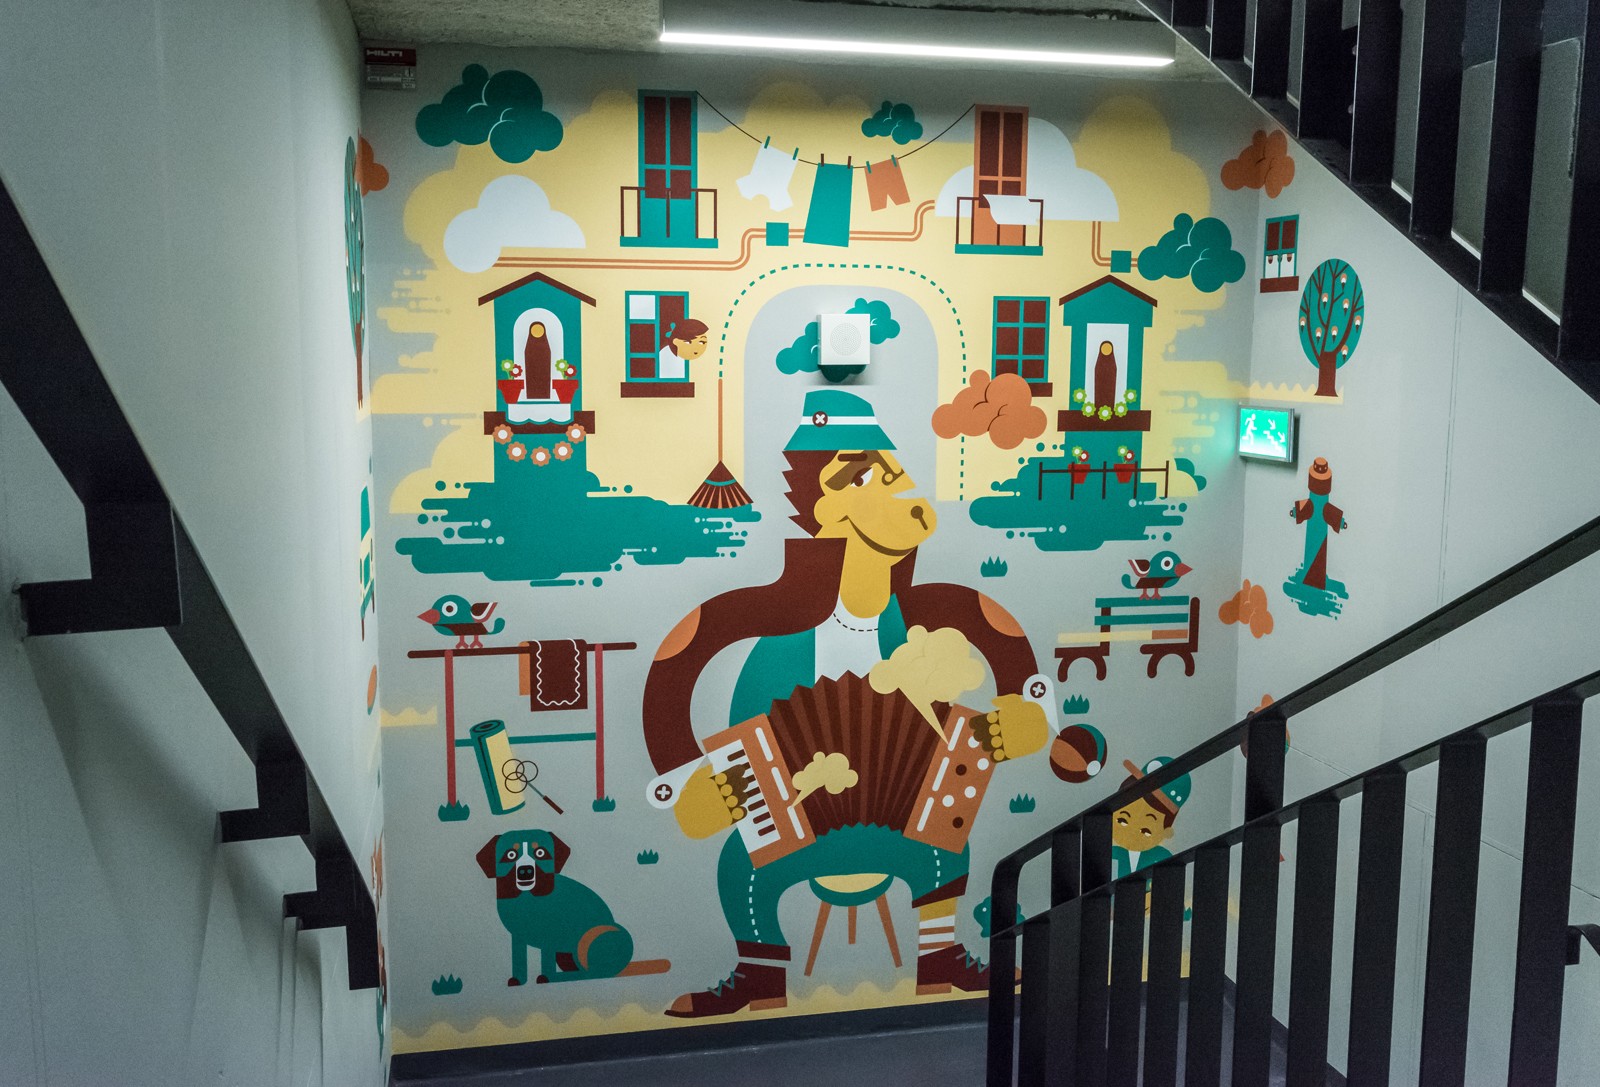 Innenräume von Q22 mit dem gemalten Mural im Auftrag von Deloitte | Malowanie na zlecenie Deloitte | Portfolio